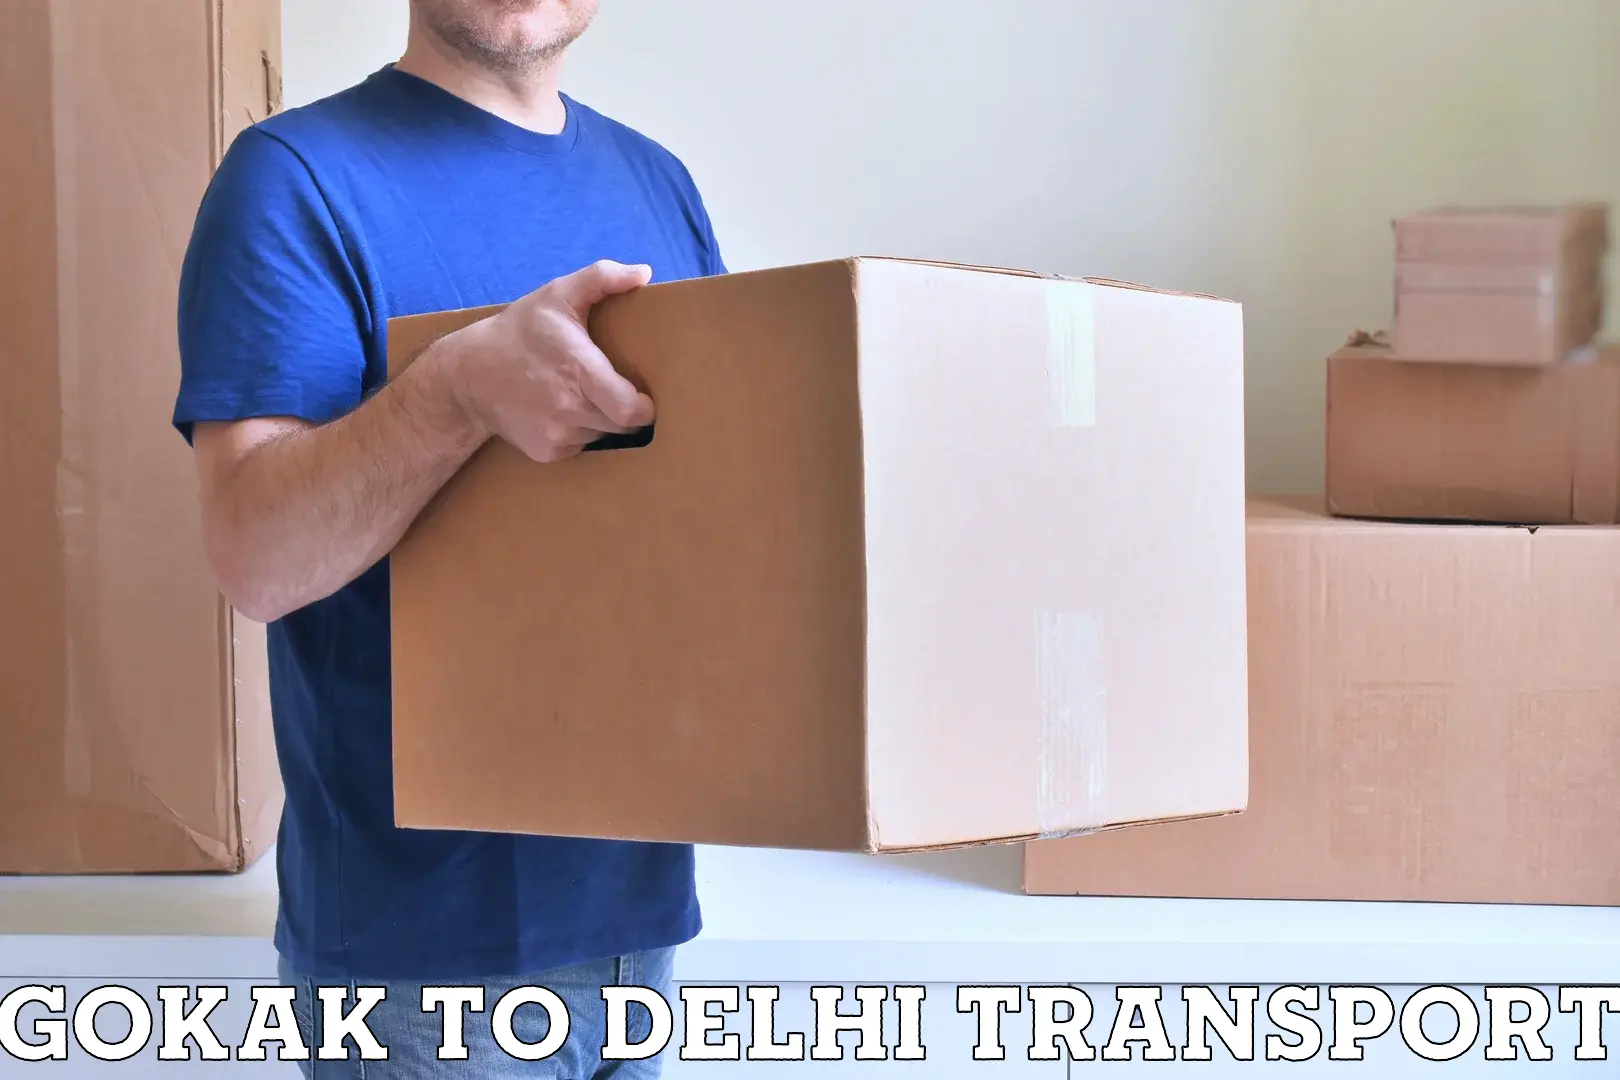 Online transport service Gokak to Delhi